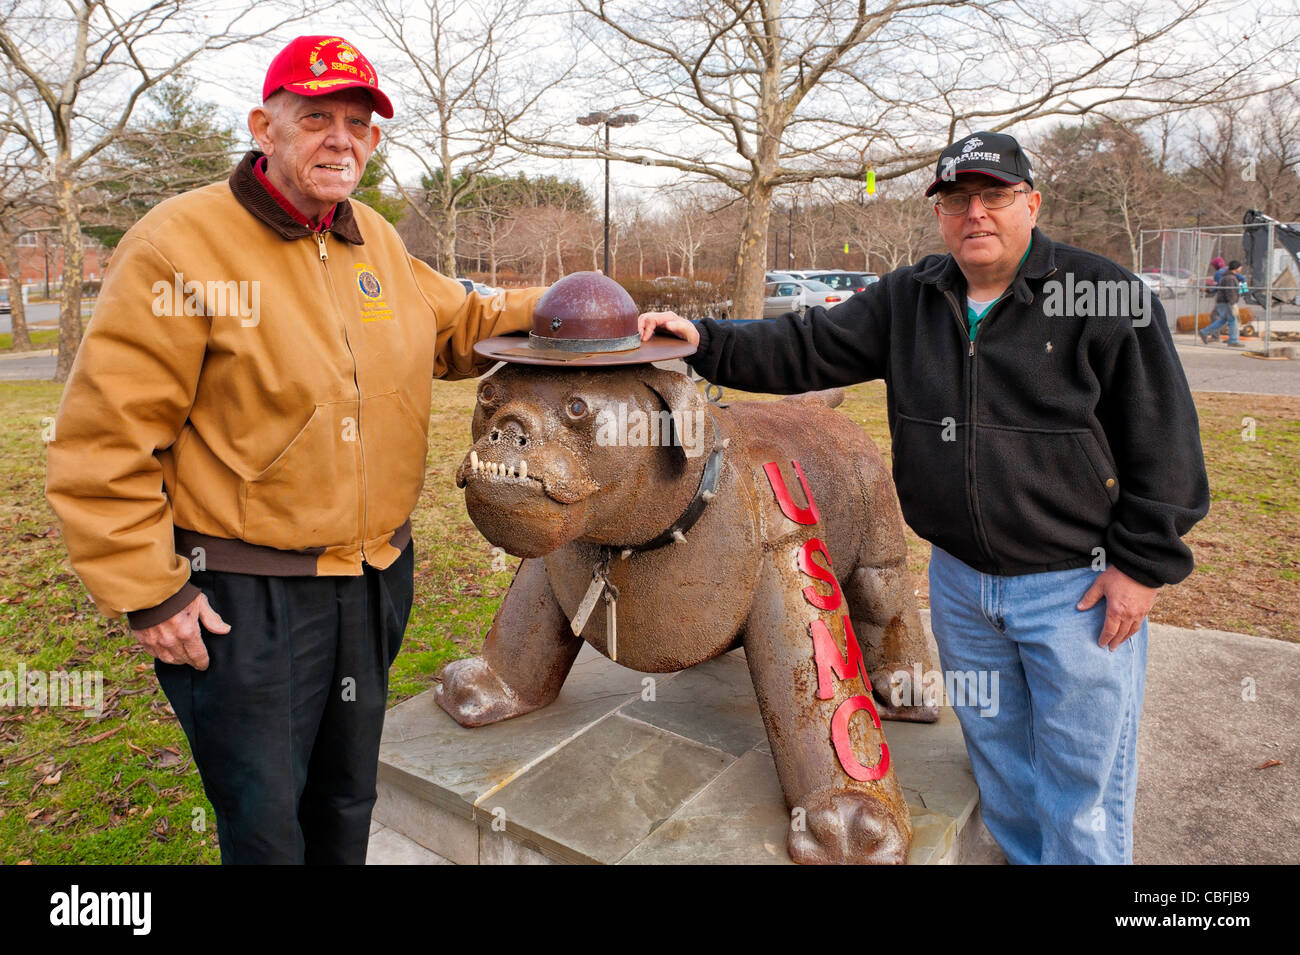 Deux anciens combattants de la Marine des États-Unis posent à l'USMC Bulldog statue (United States Marine Corps) à l'extérieur, Northport, New York, 2011-12-10 Banque D'Images